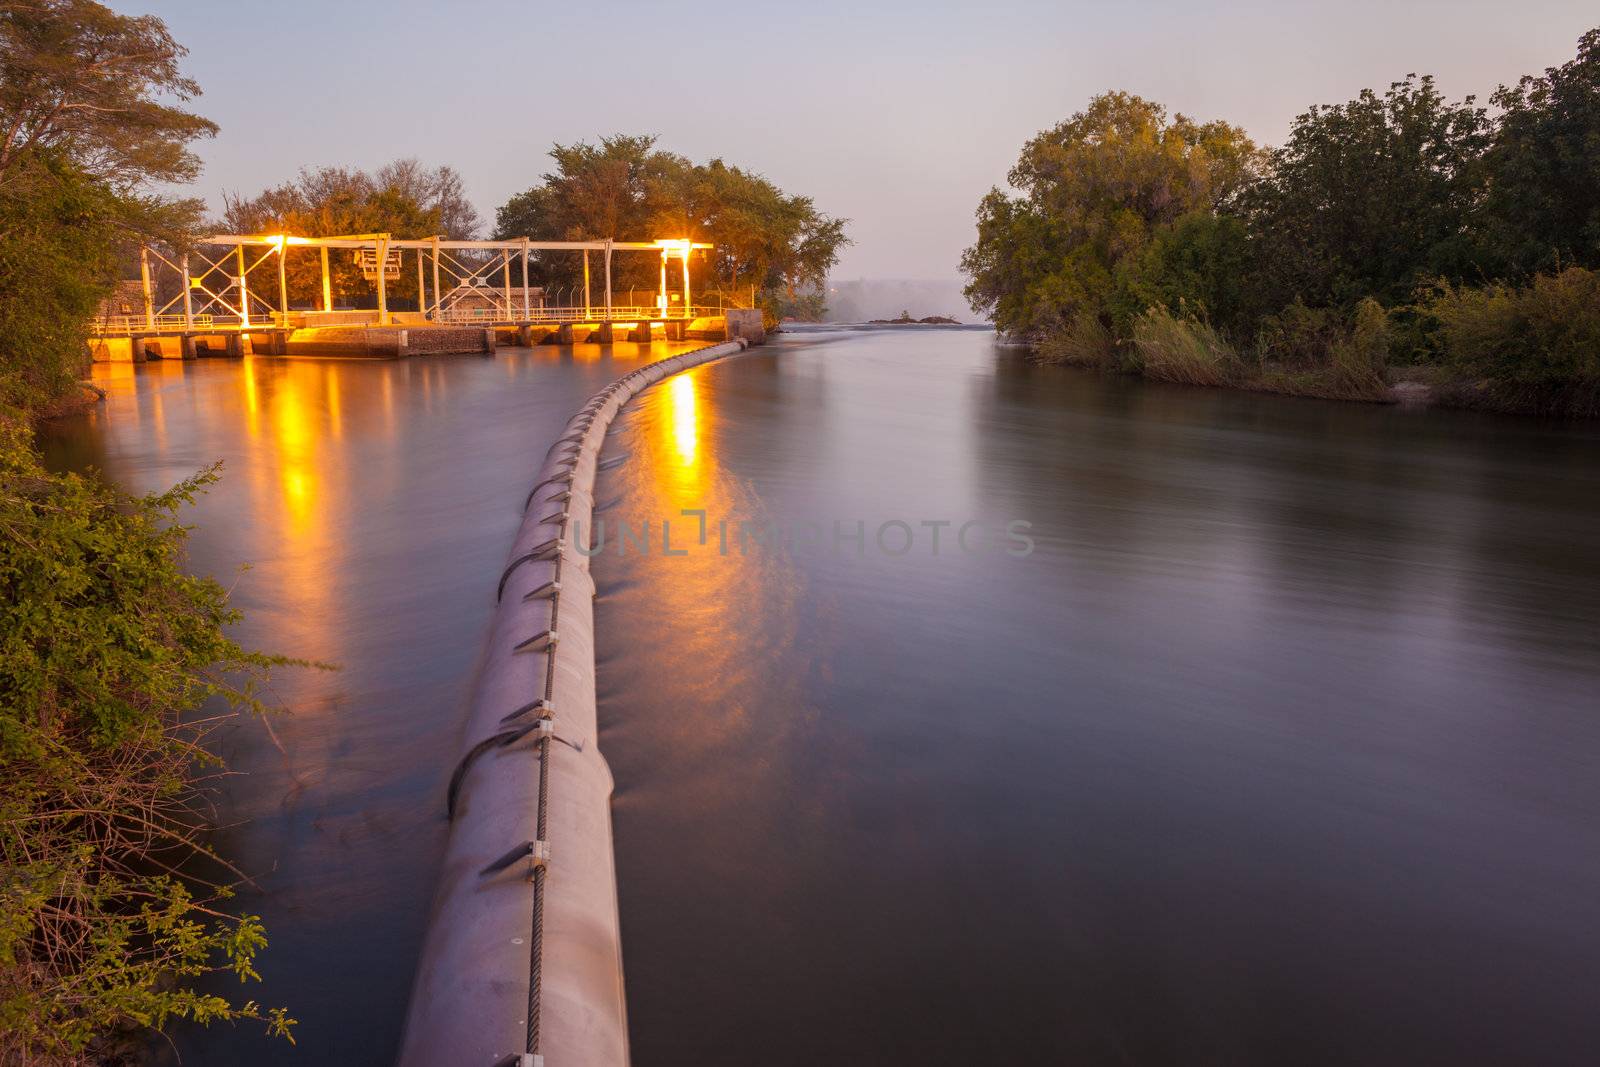 Zambezi River by edan